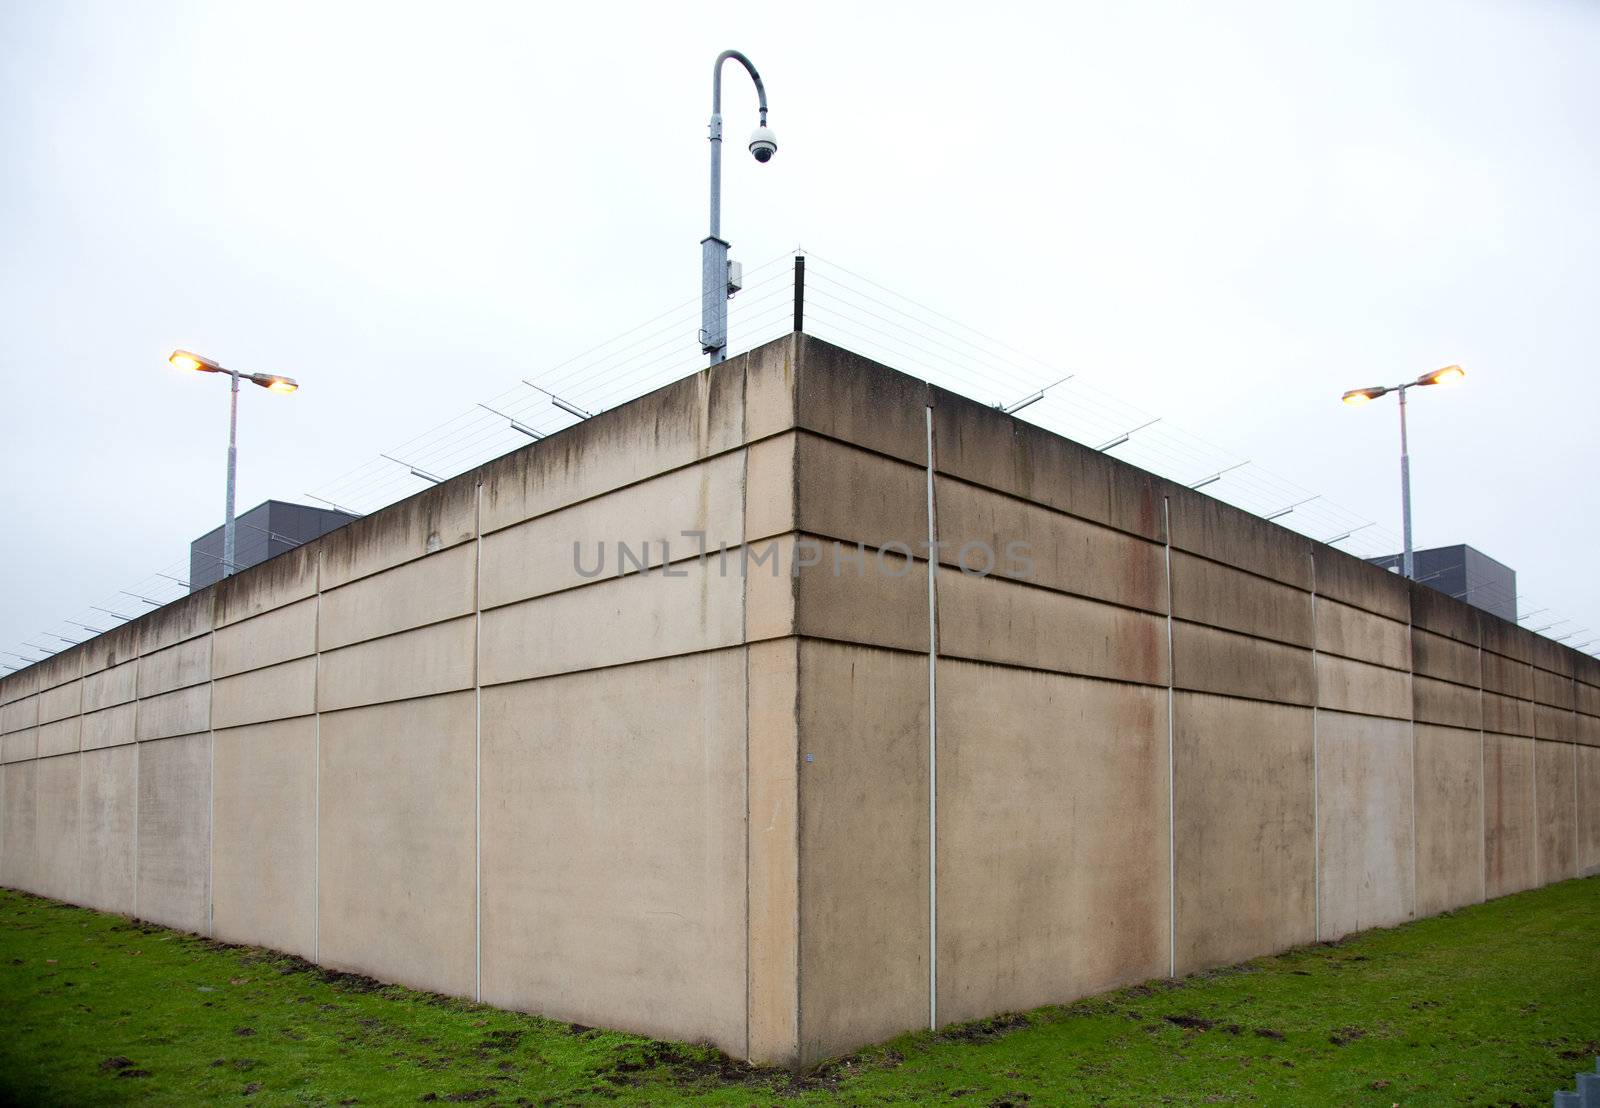 walls of prison by ahavelaar